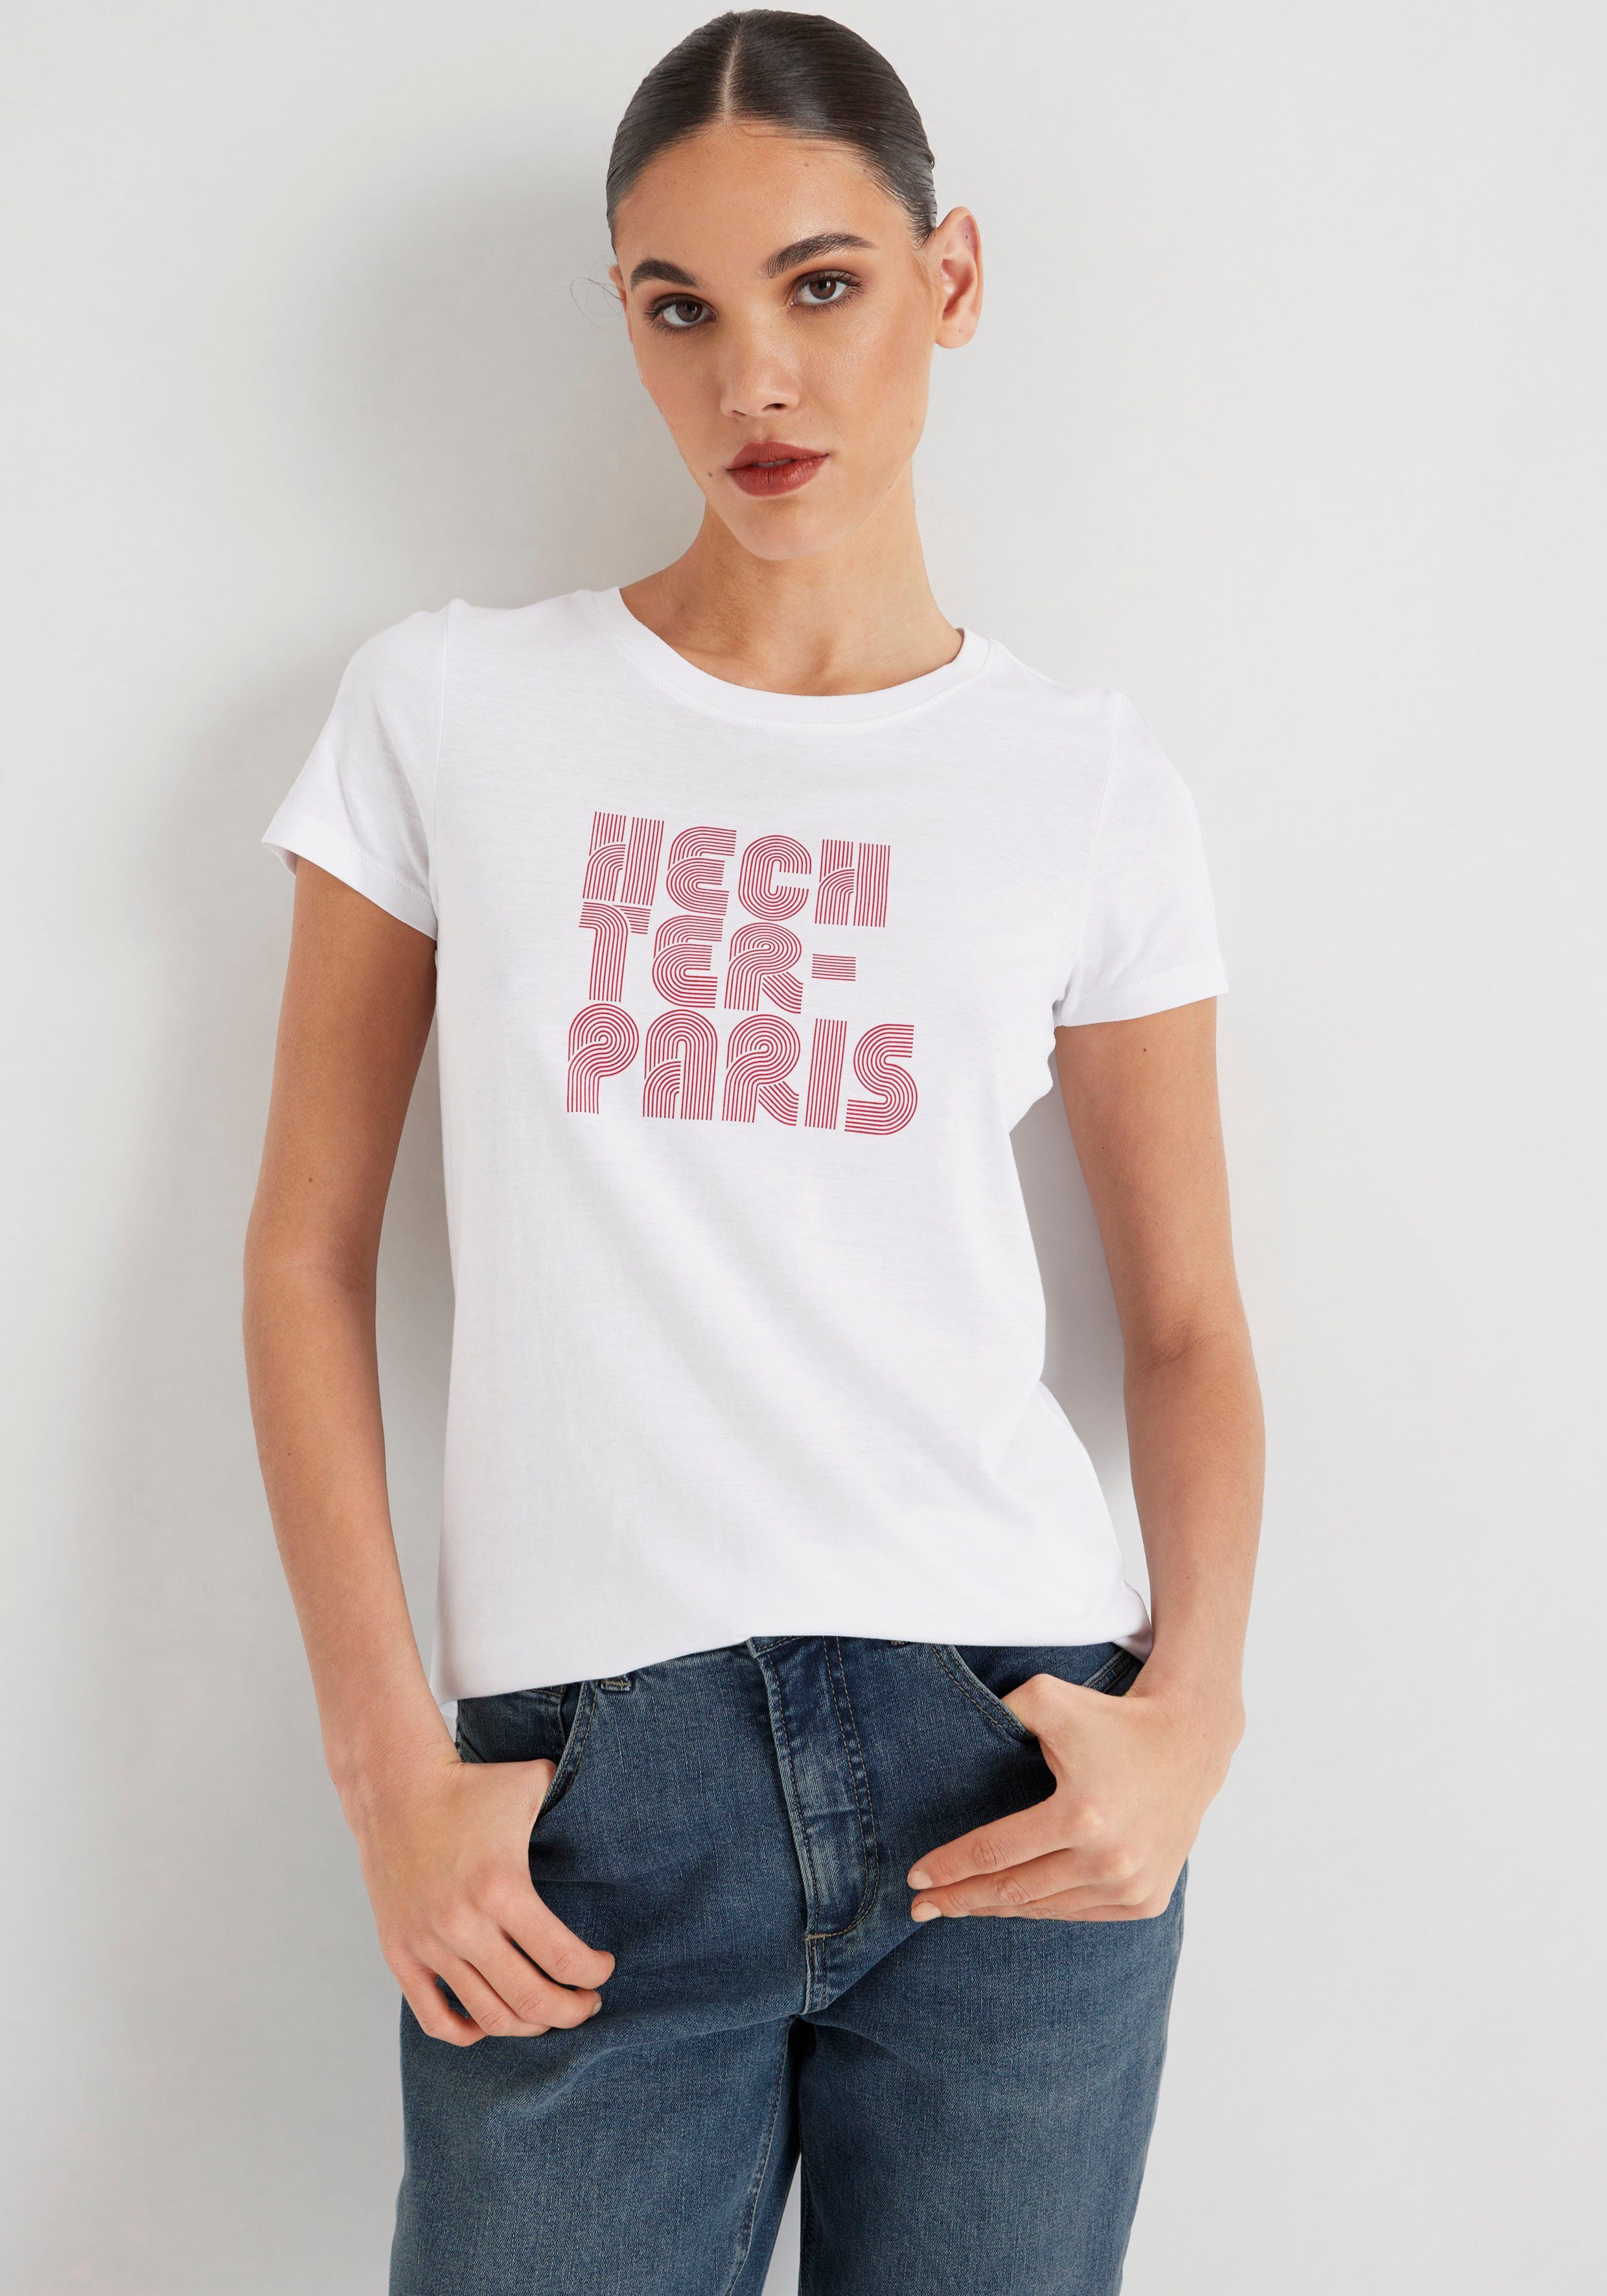 T-Shirt PARIS weiß-rot mit HECHTER Druck